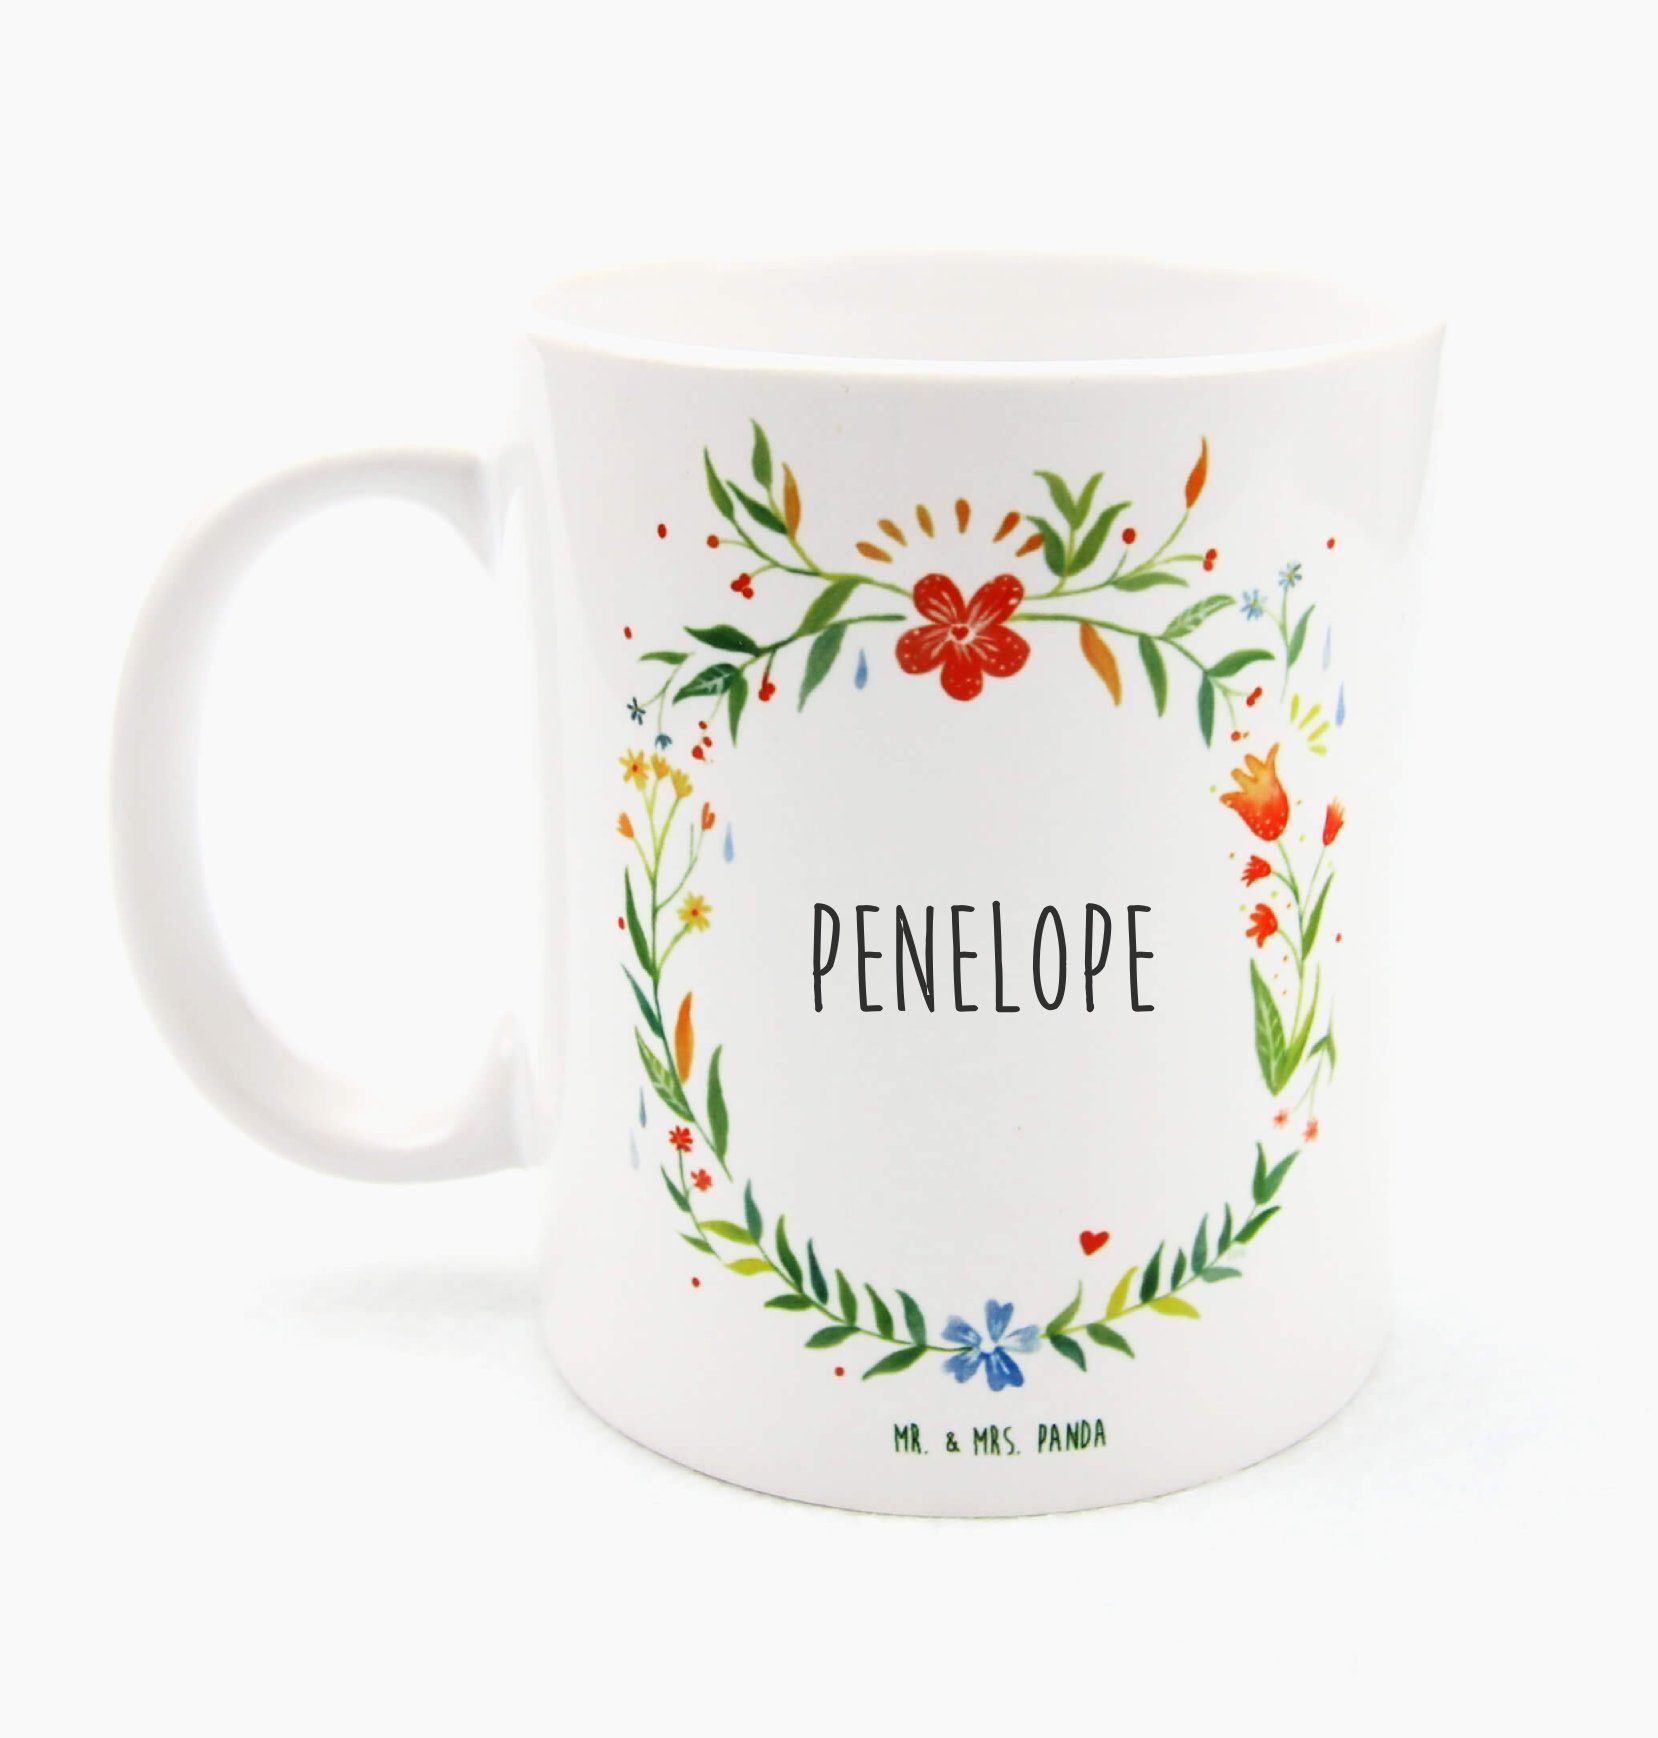 Mr. & Mrs. Panda Tasse Penelope - Geschenk, Teetasse, Geschenk Tasse, Tasse Sprüche, Kaffeet, Keramik